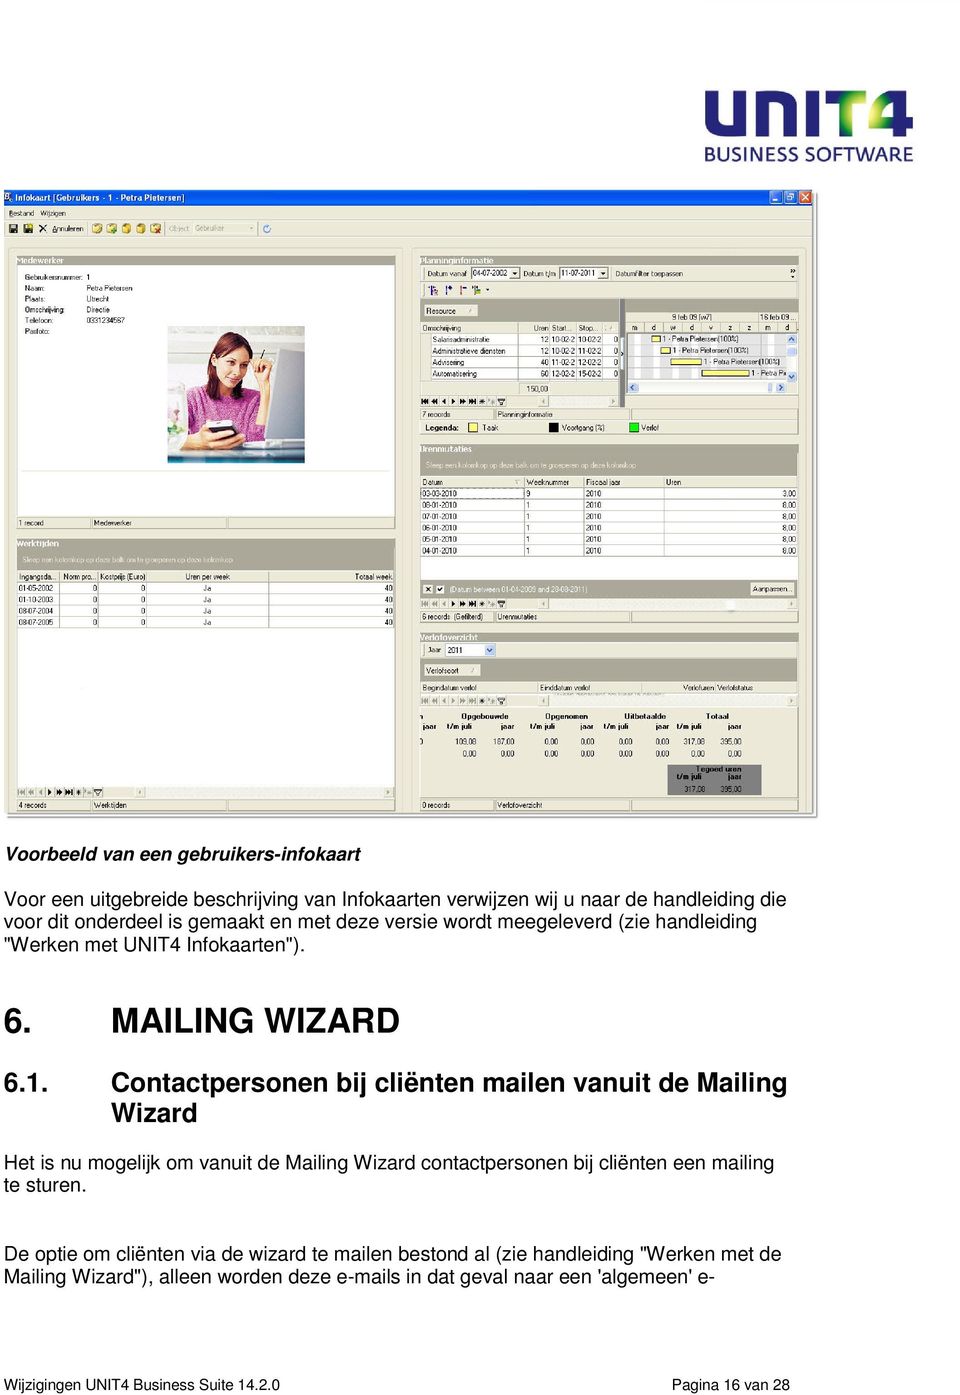 Contactpersonen bij cliënten mailen vanuit de Mailing Wizard Het is nu mogelijk om vanuit de Mailing Wizard contactpersonen bij cliënten een mailing te sturen.